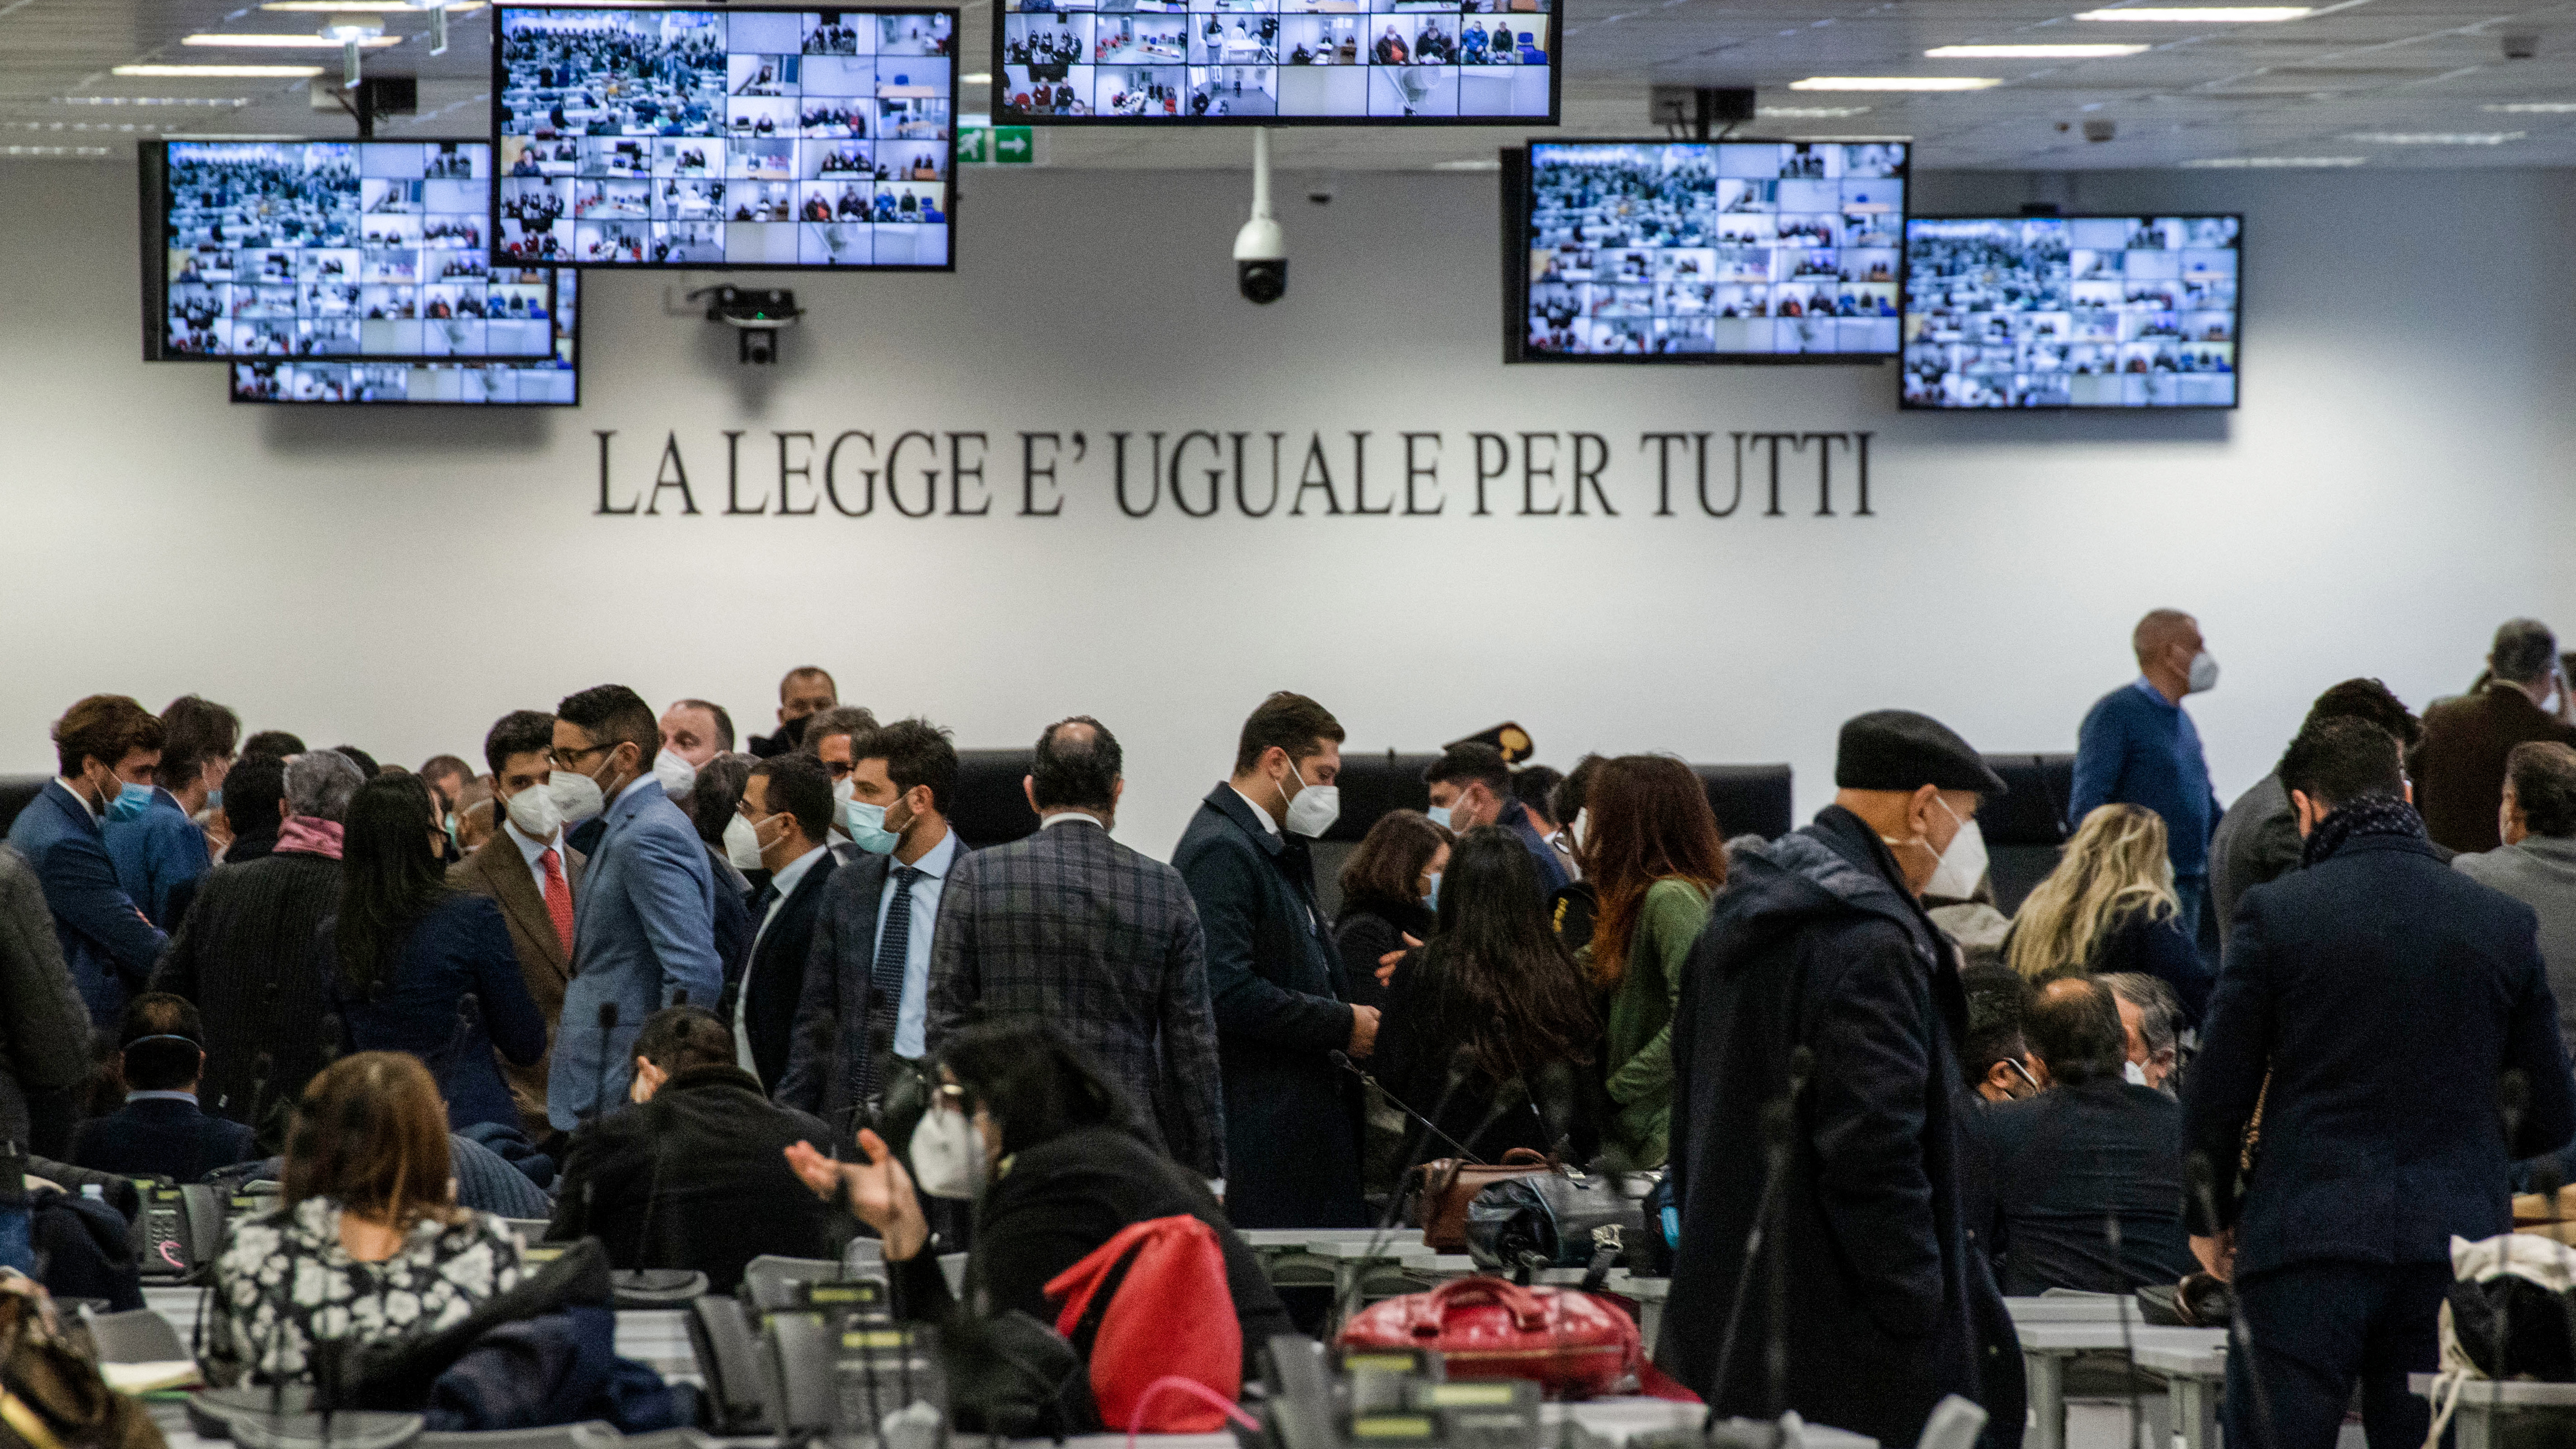 2.150 χρόνια κάθειρξης για 200 κατηγορούμενους της ισχυρότερης μαφίας της ιταλικής χερσονήσου